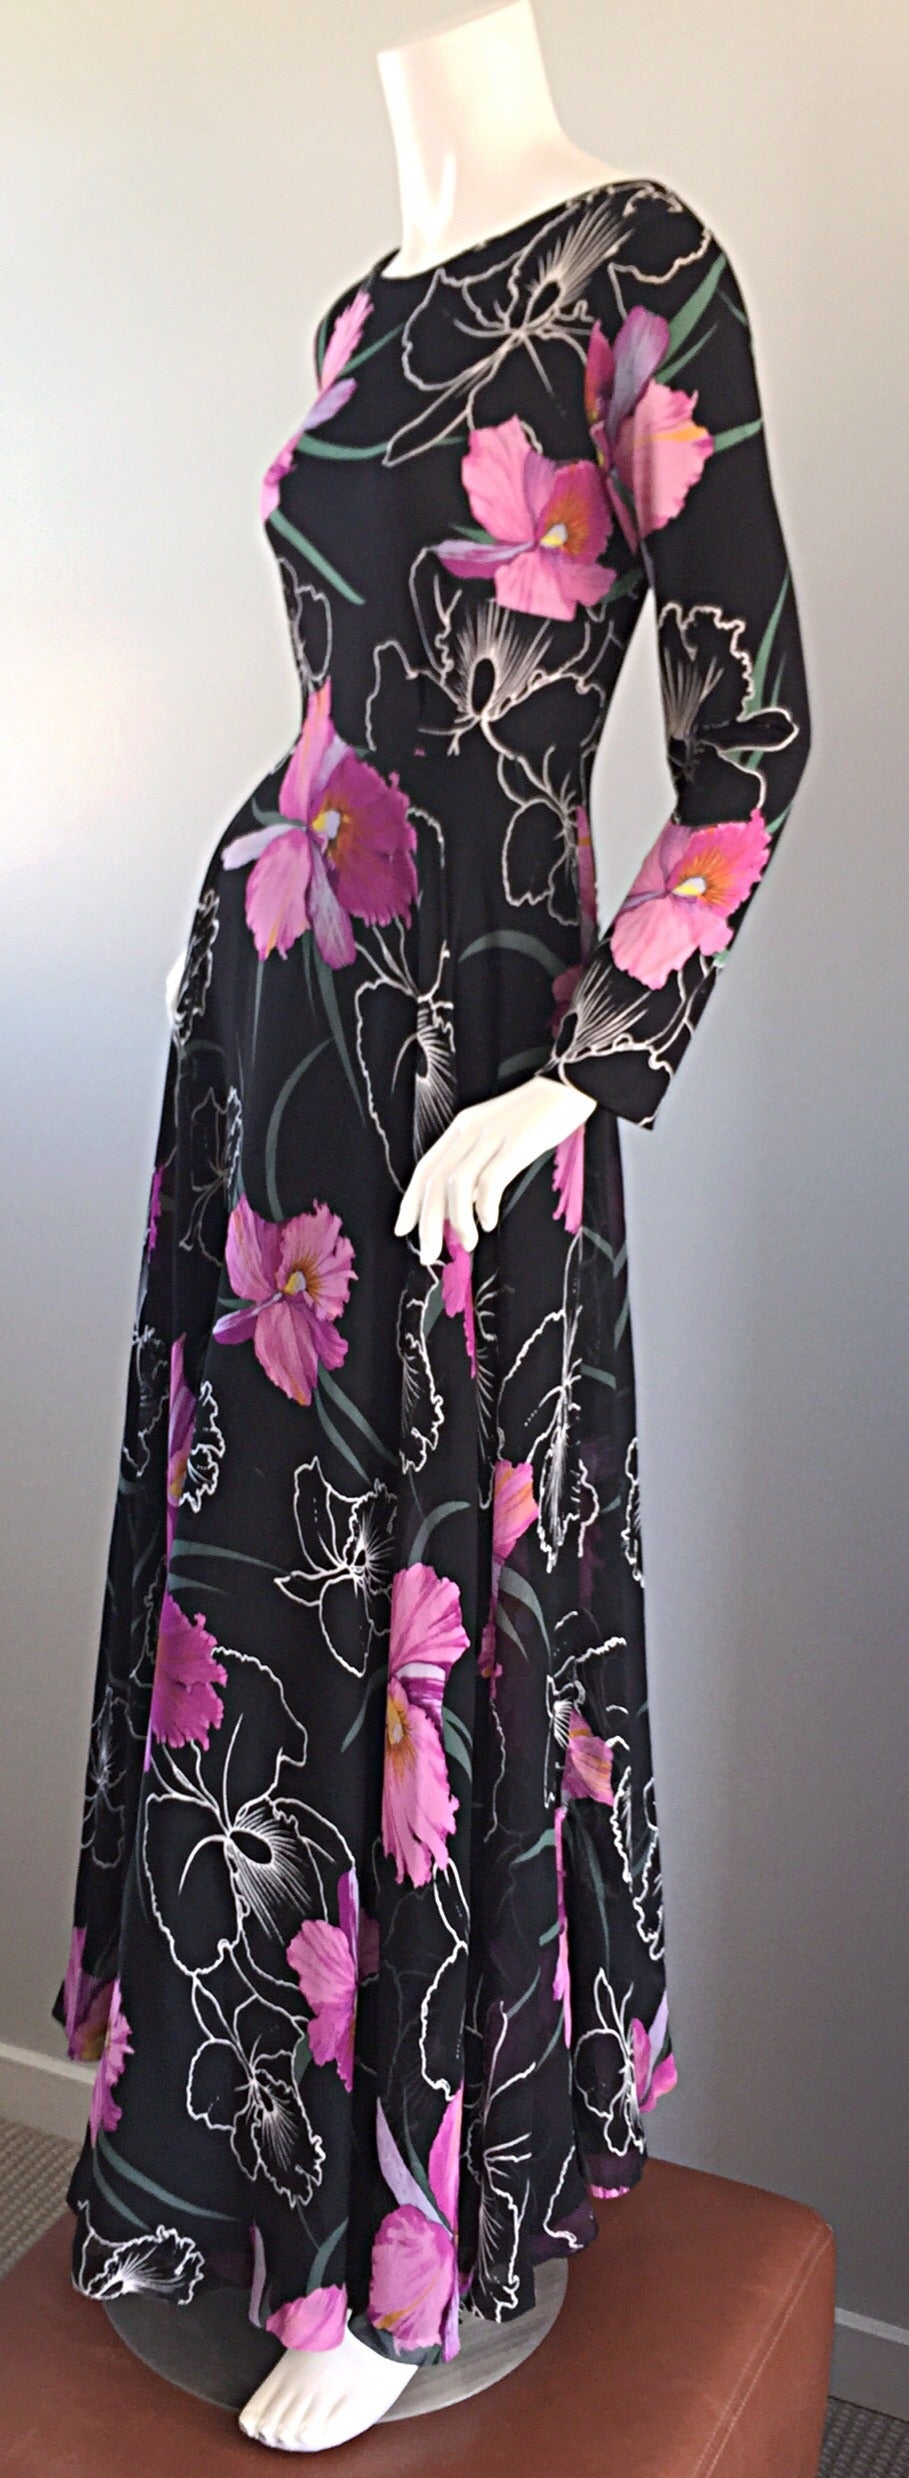 Unglaublich schönes Vintage La Mendola Seiden Chiffon Kleid! Atemberaubender Hibiskus-Blumendruck mit einem leichten 3-D-Effekt. Schichten über Schichten aus feinem Seidenchiffon, mit einem wunderschönen vollen Rock. Die Stücke von La Mendola sind